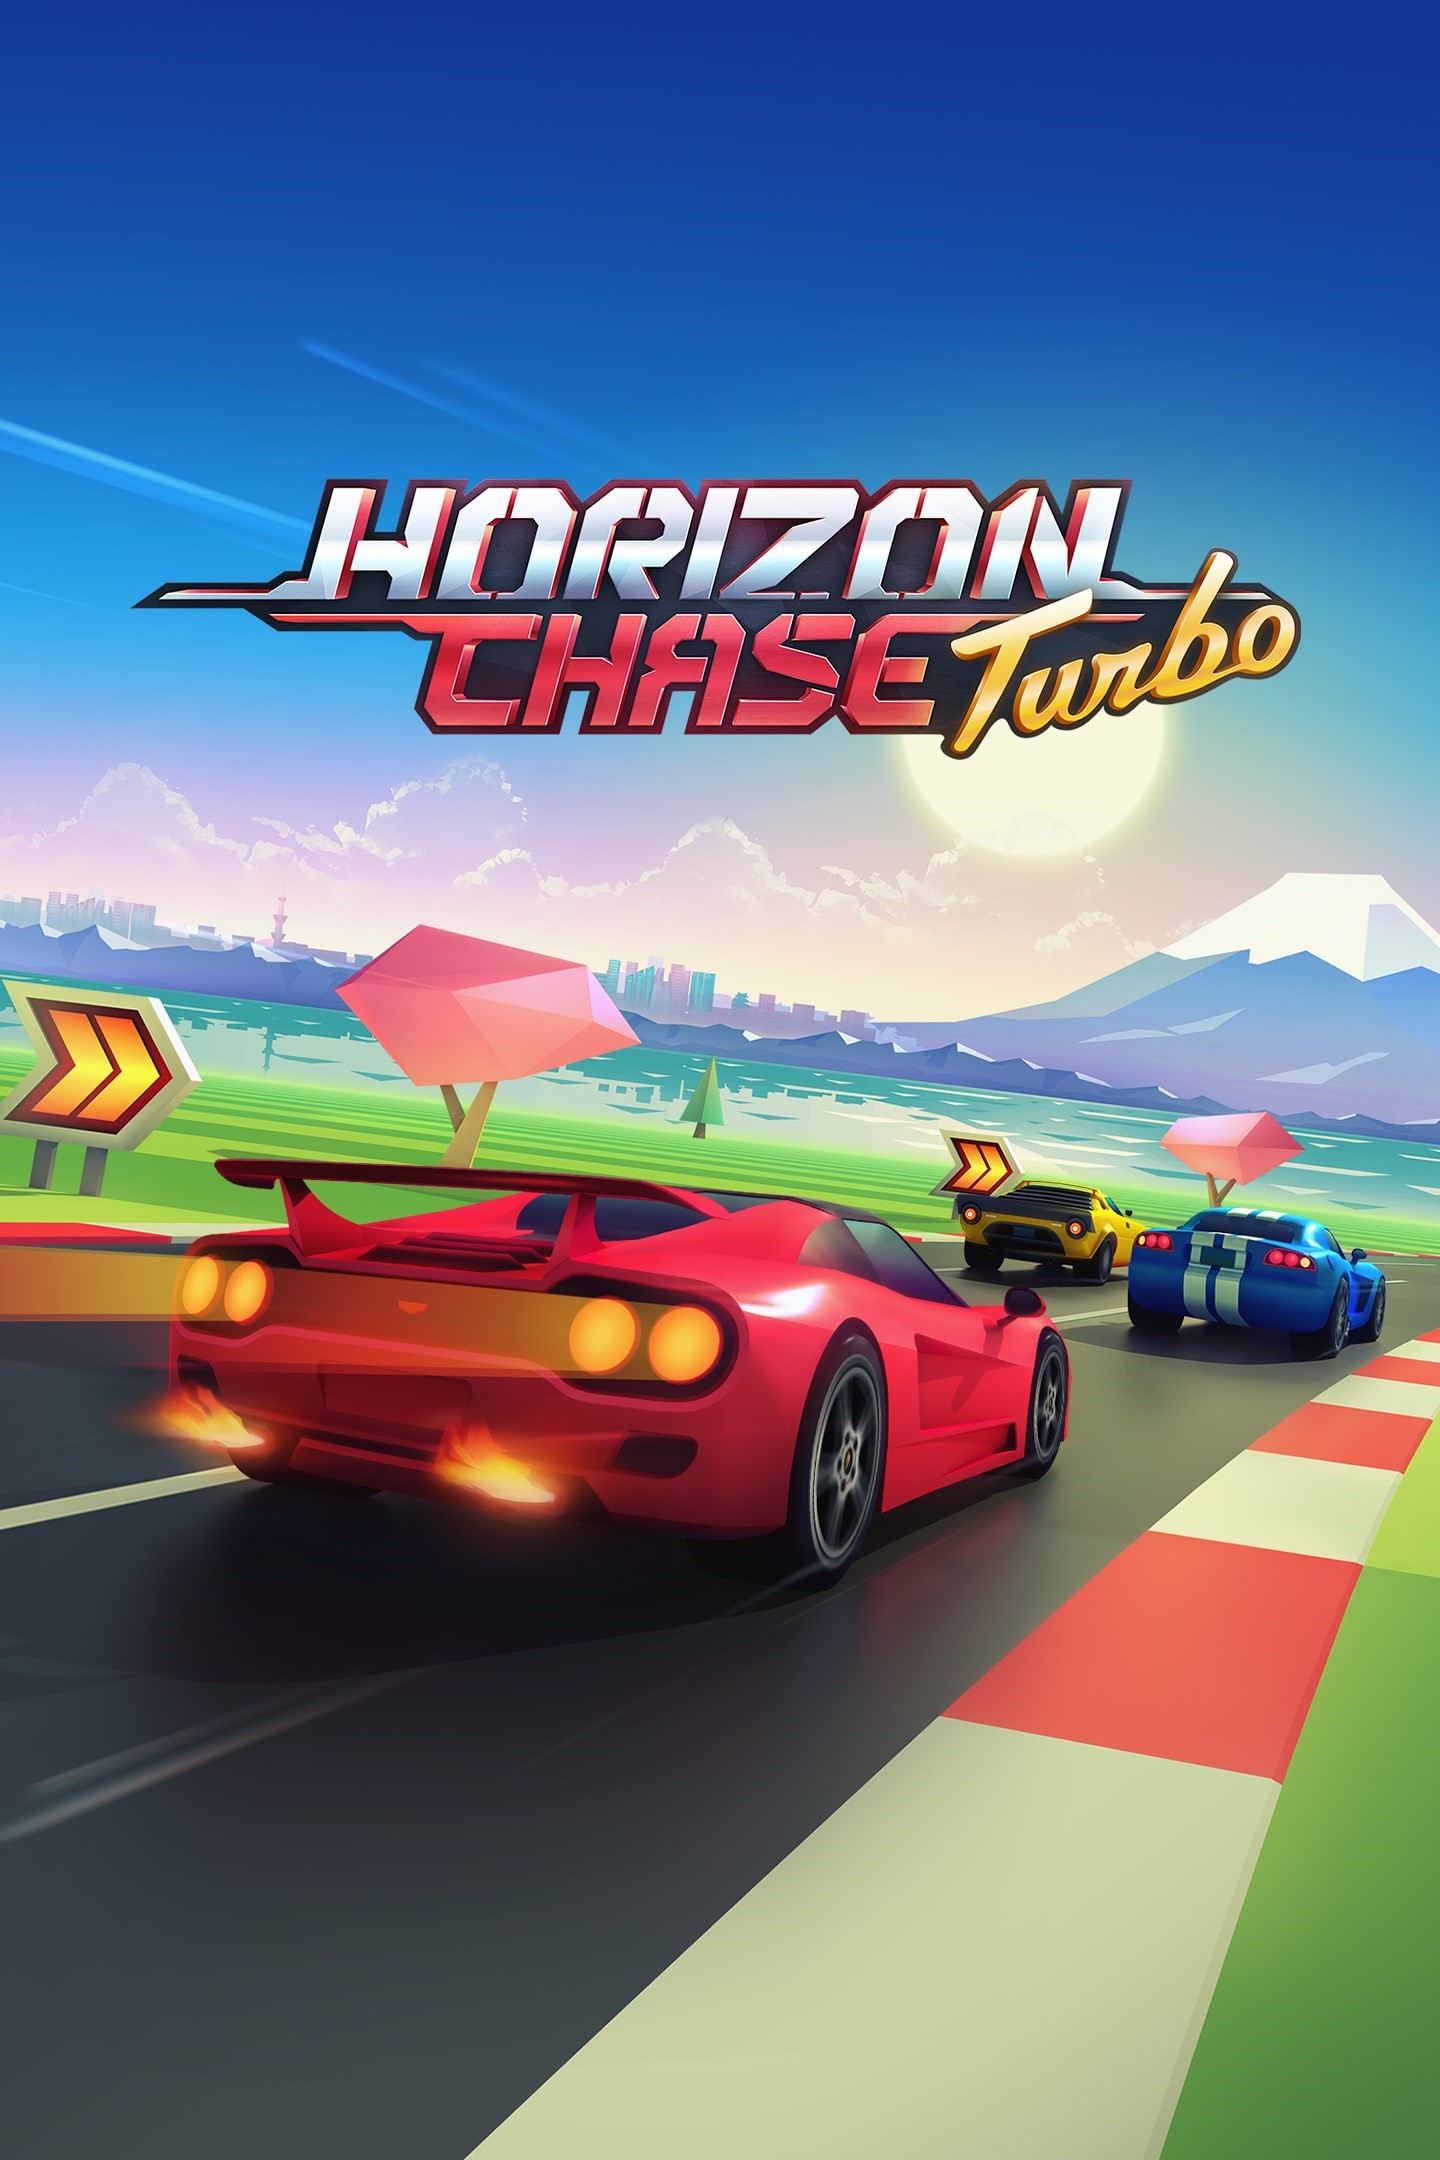 Horizon Chase Turbo/Xbox